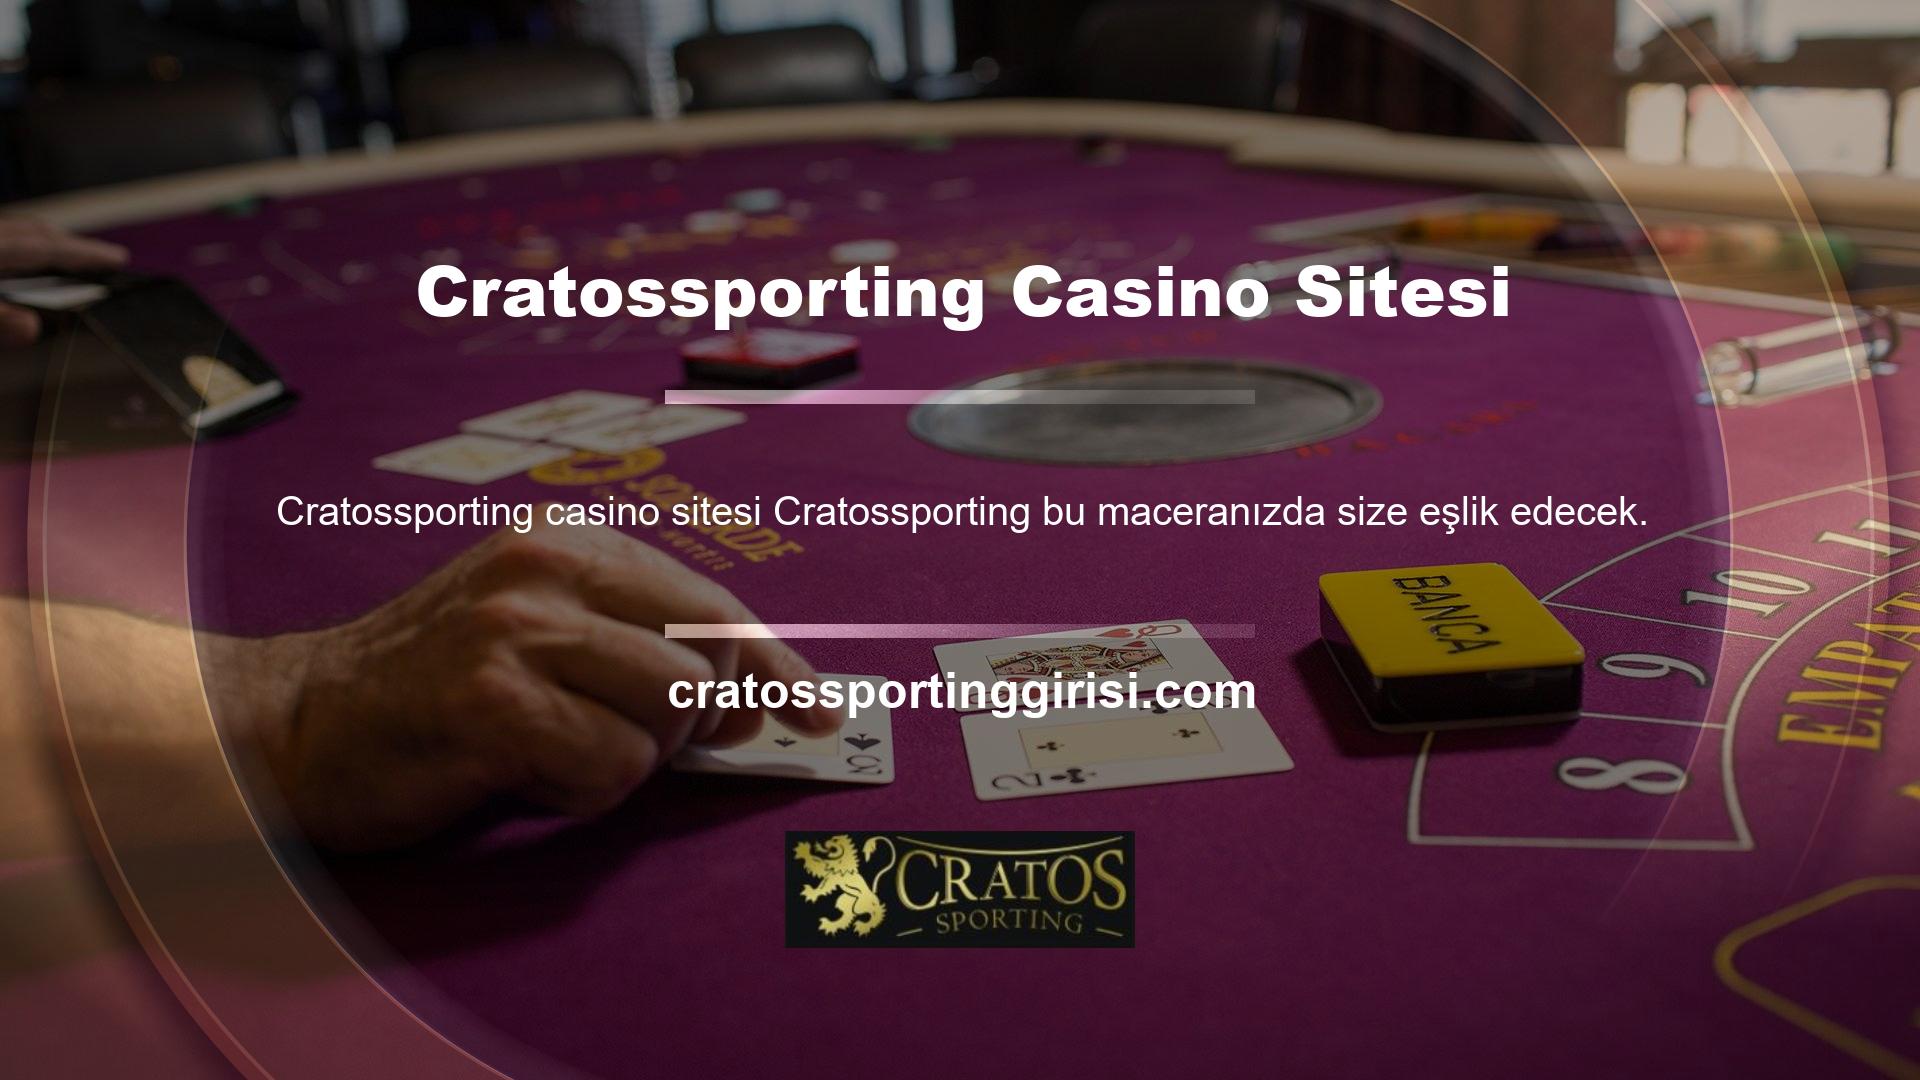 Cratossporting Başkası adına para çekebilir miyim? En güvenilir ve lisanslı casino sitelerinden biridir